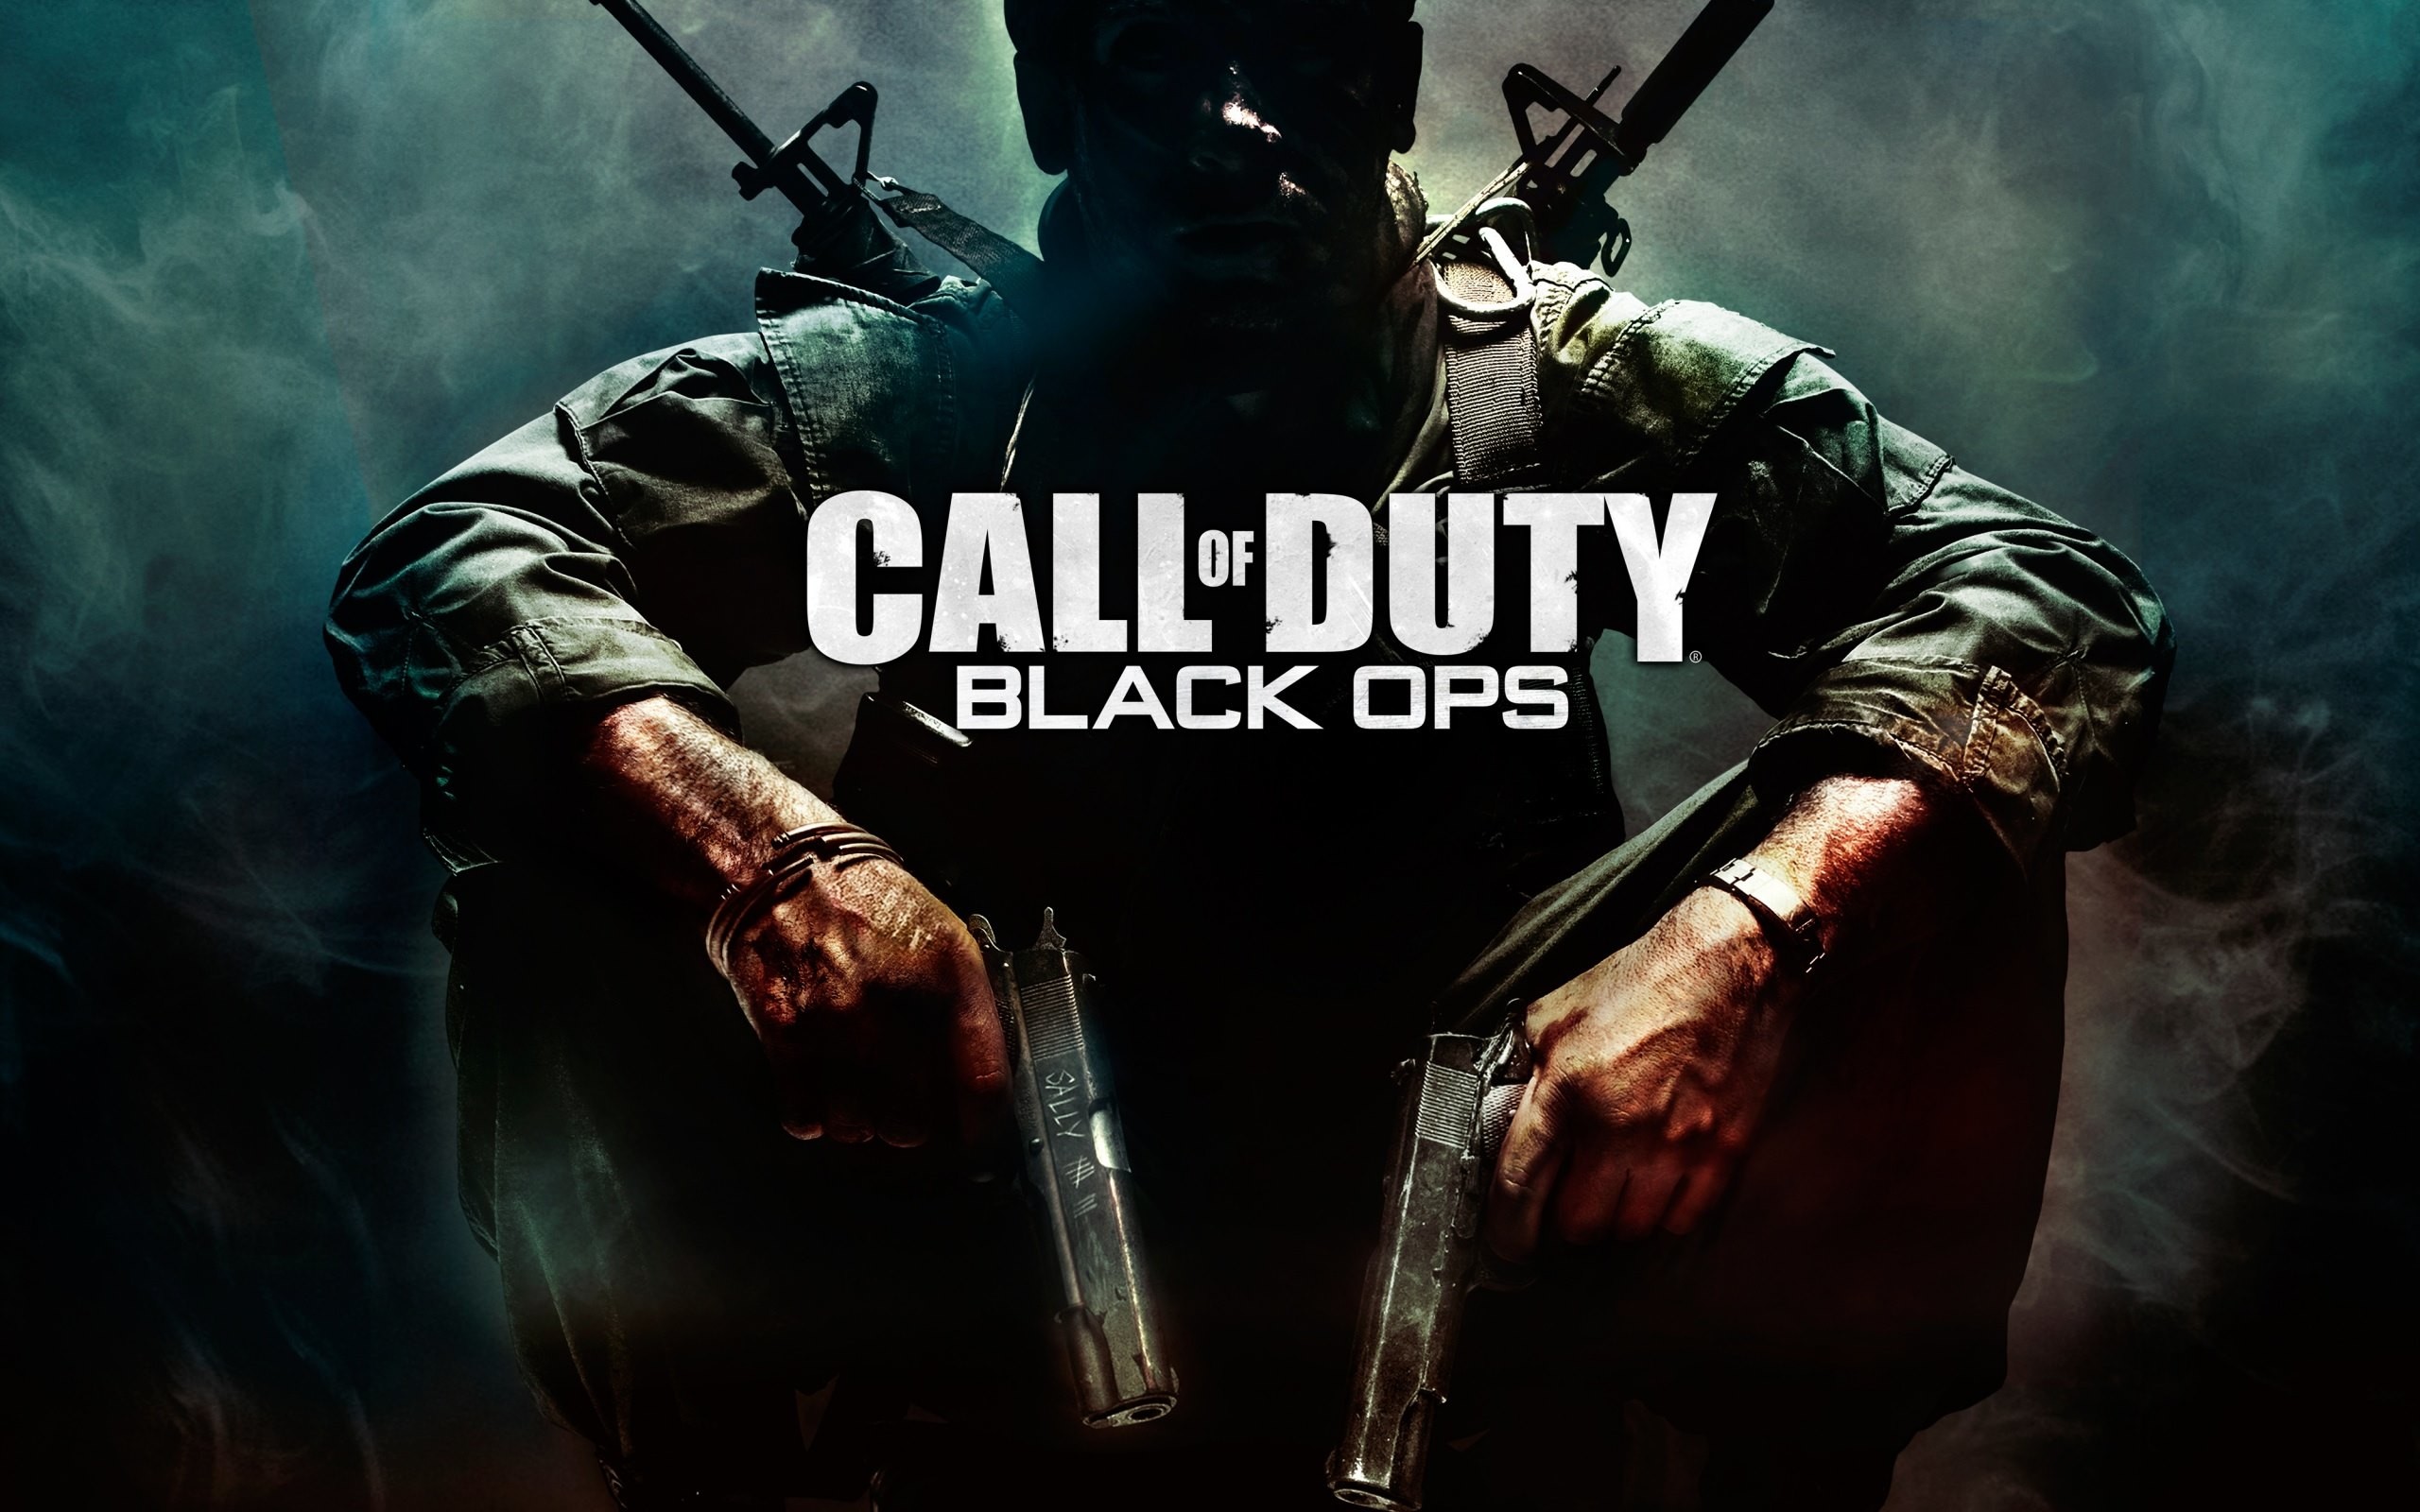 Call of Duty là một trong những trò chơi bắn súng ưa thích nhất hiện nay. Hãy đến với ảnh liên quan để được trải nghiệm và khám phá thêm về sự đang chiến đấu chống lại các tên cướp trong game này.